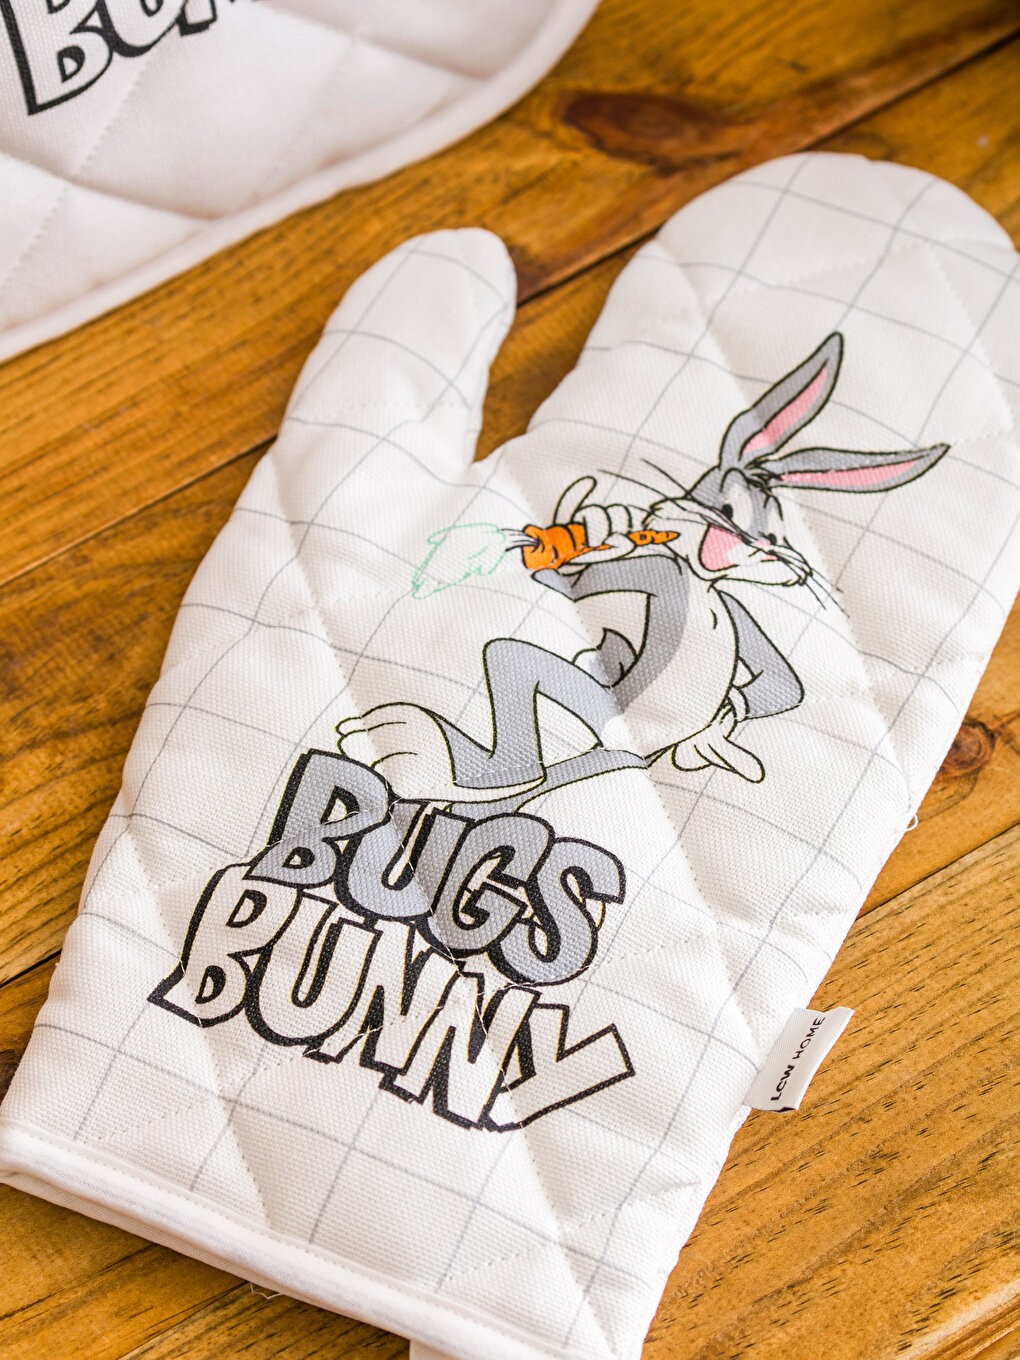 Bugs Bunny Printed Oven Glove Set -S4GV83Z8-F9C - S4GV83Z8-F9C 